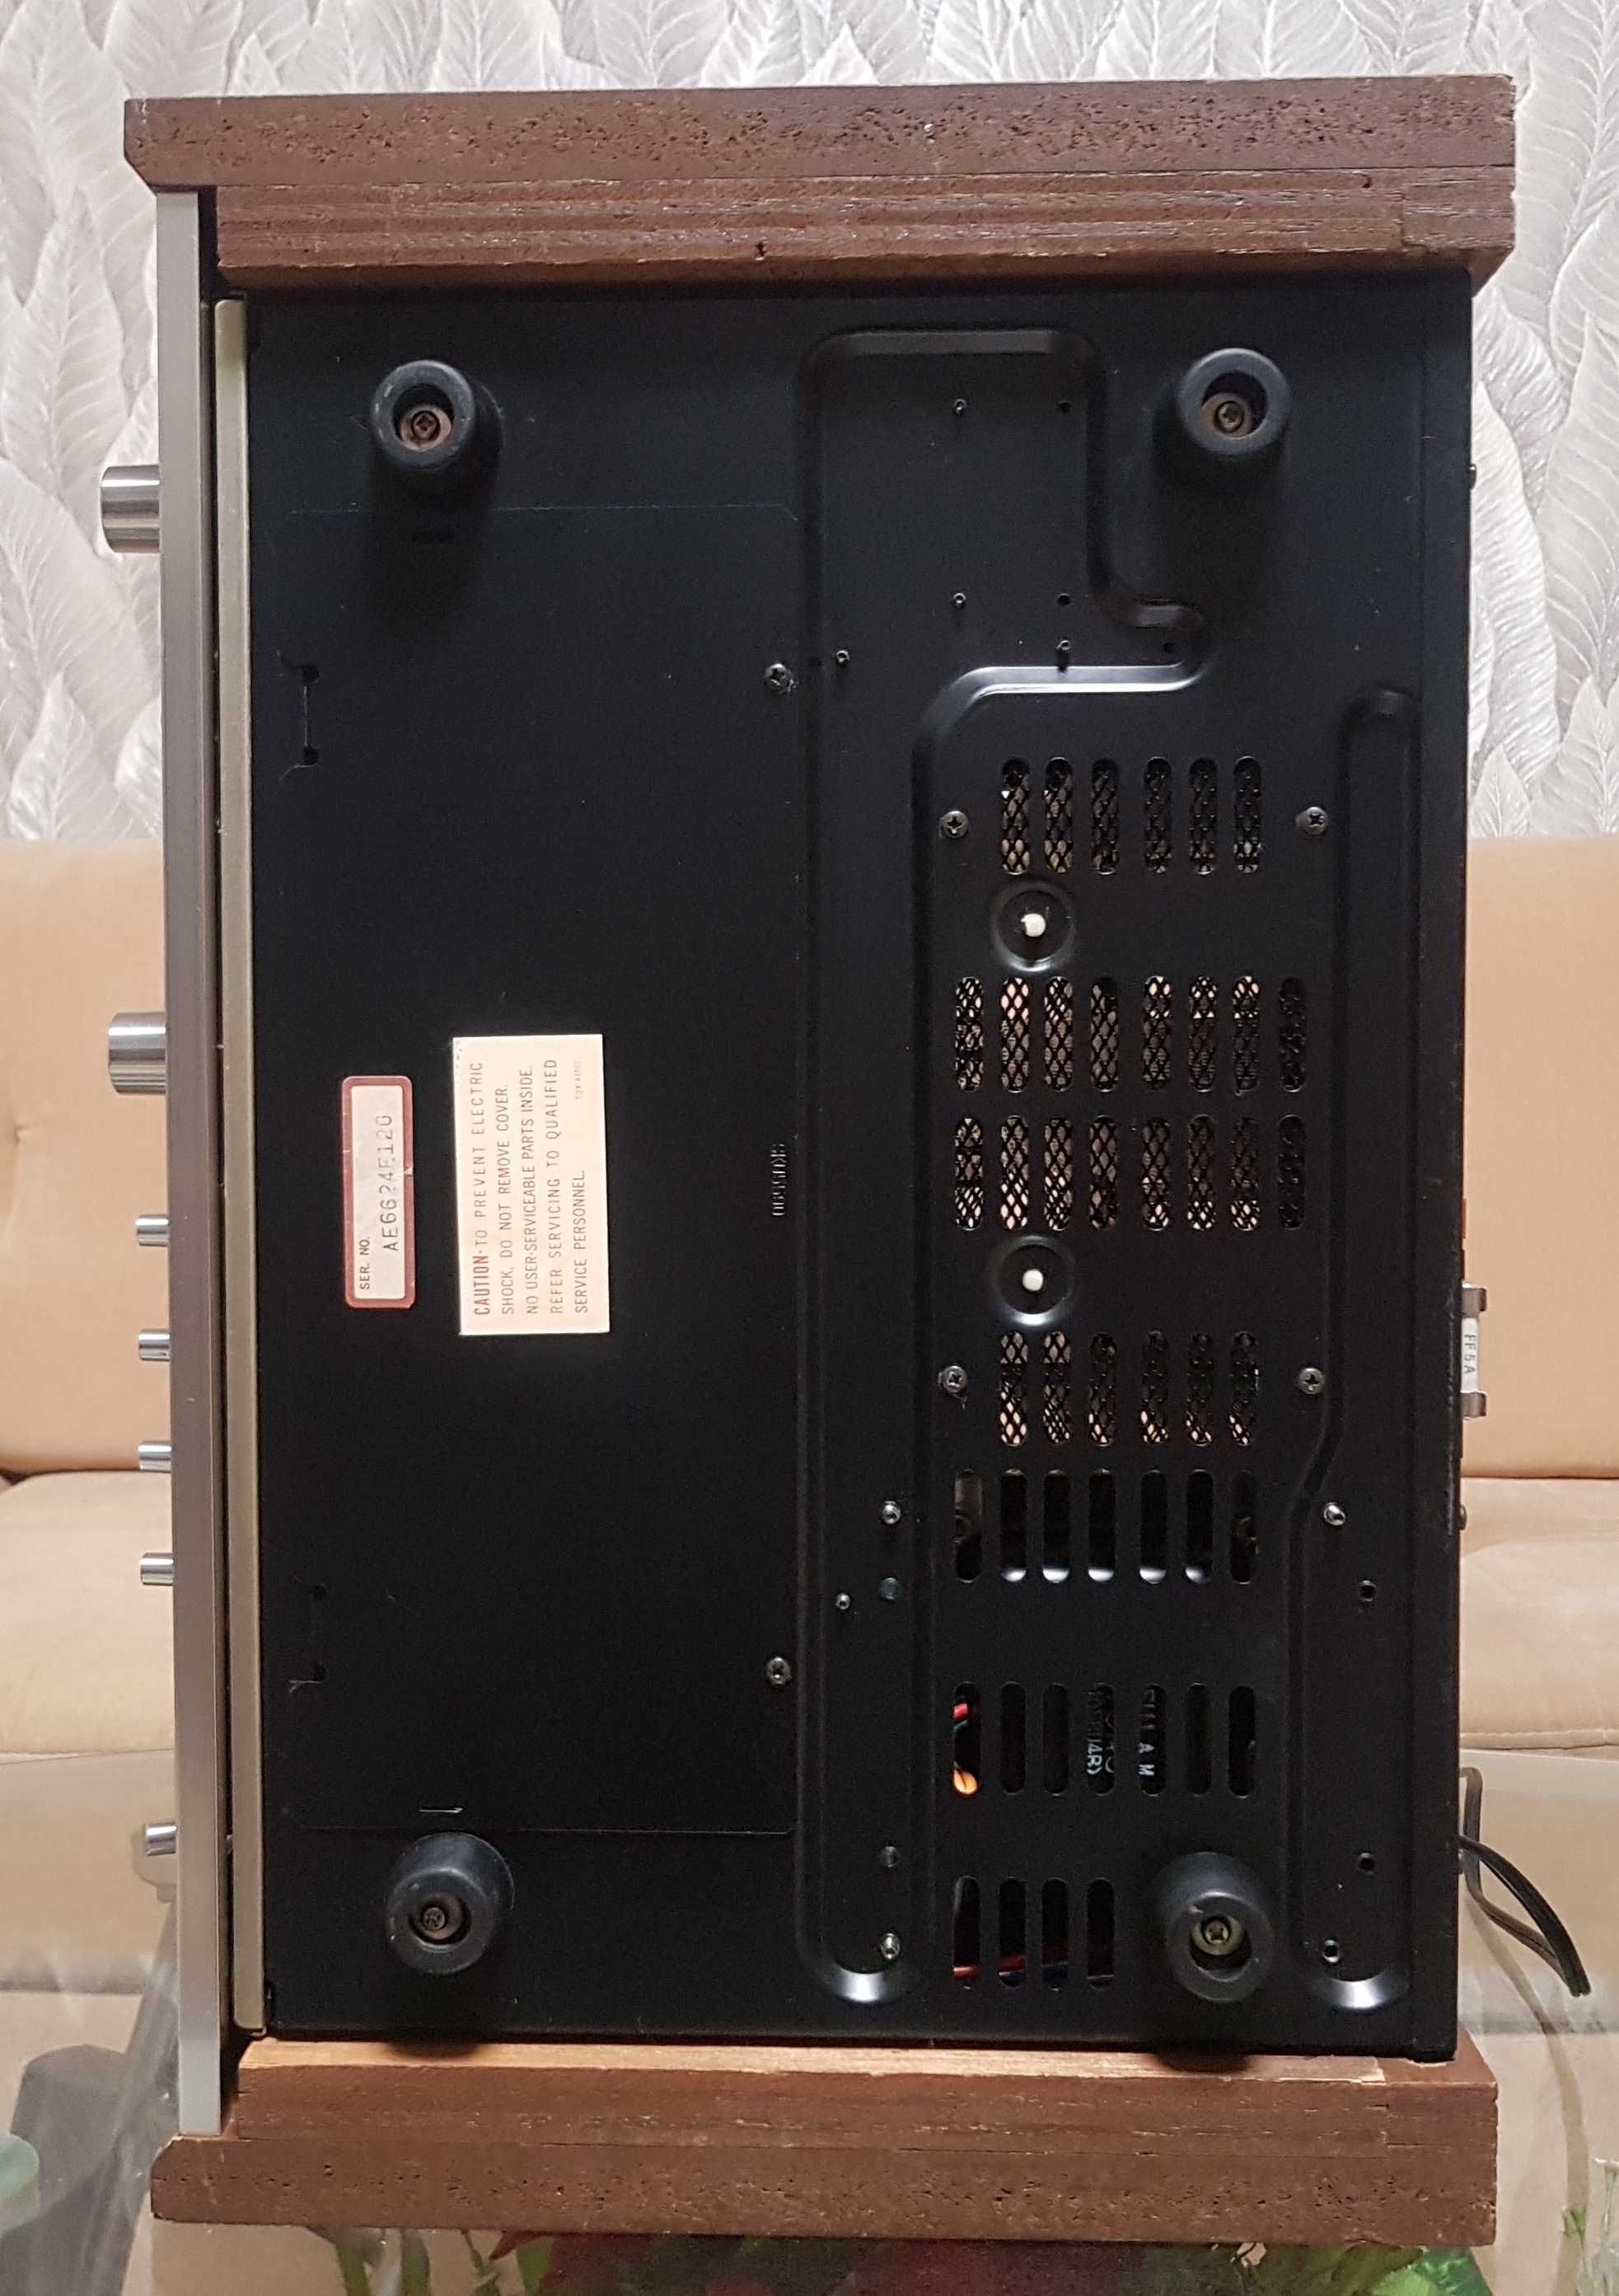 Усилитель TECHNICS BY PANASONIC SU-8600 integrated amplifer,Japan